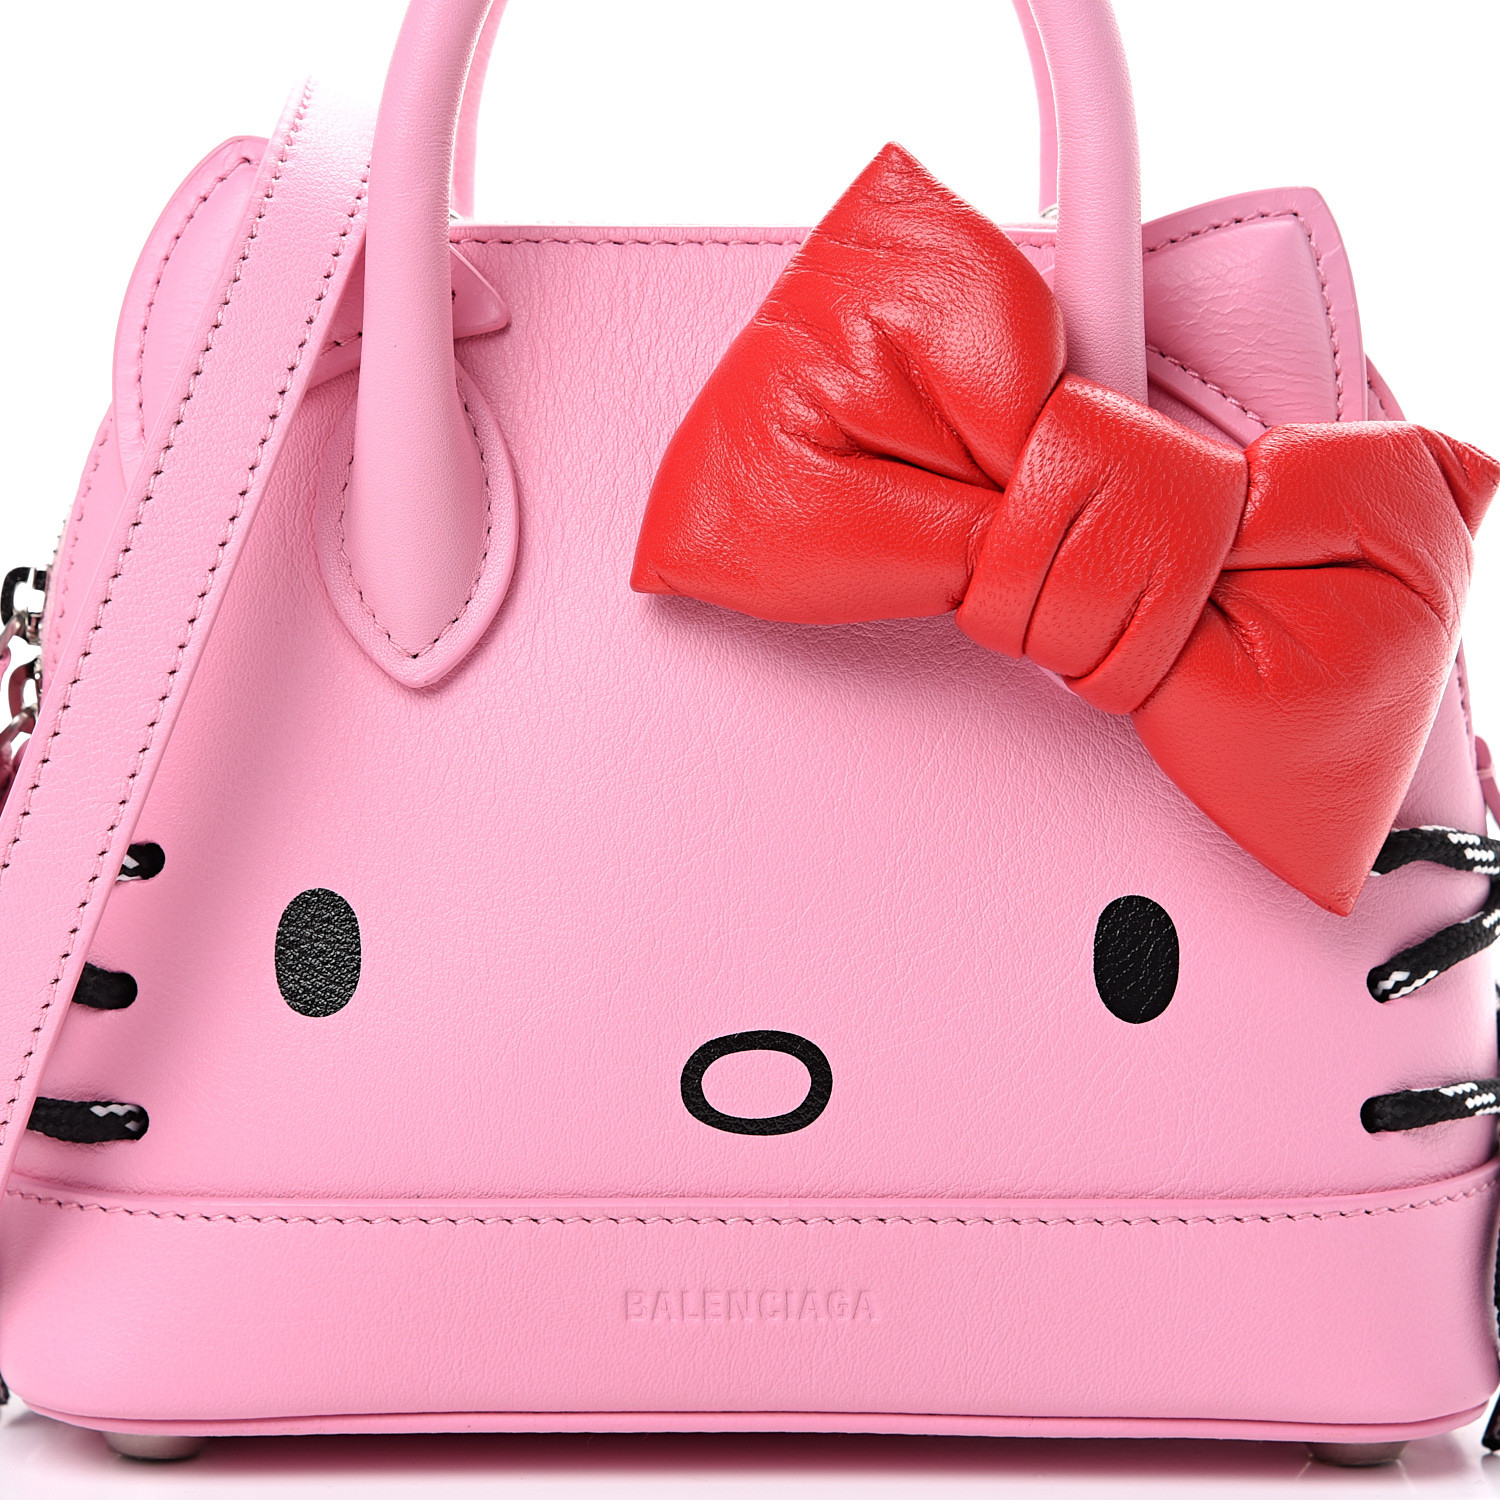 Balenciaga Hello Kitty Bag / Balenciaga Black Leather Hello Kitty L Bag ...